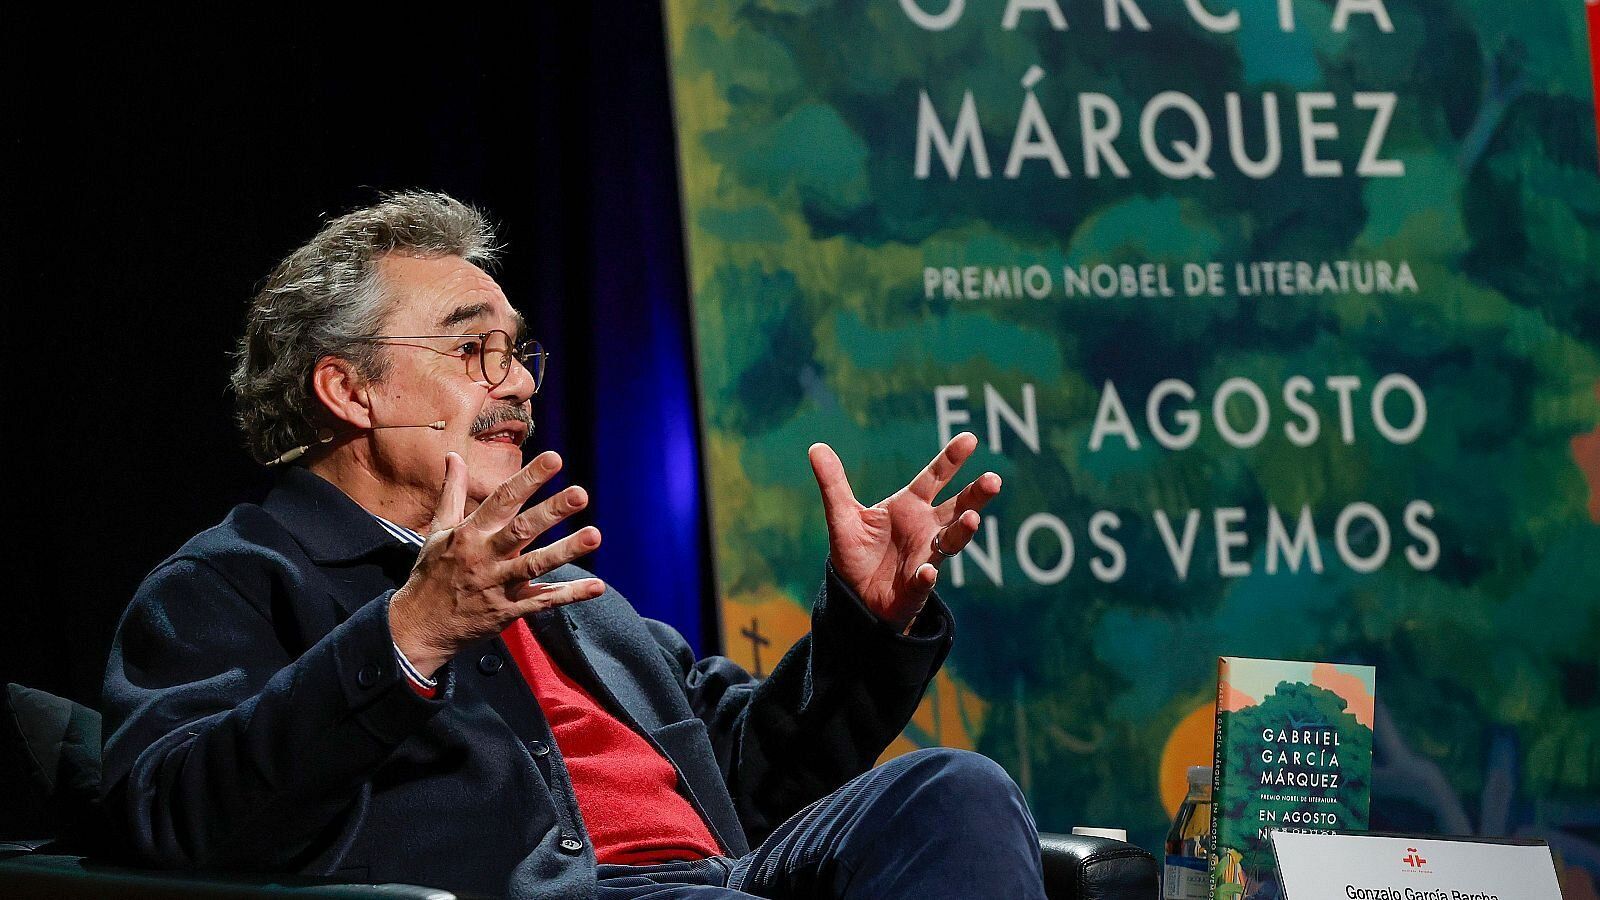 Los hijos de García Márquez: "No estamos en el negocio de destruir libros, sino en el de preservar"